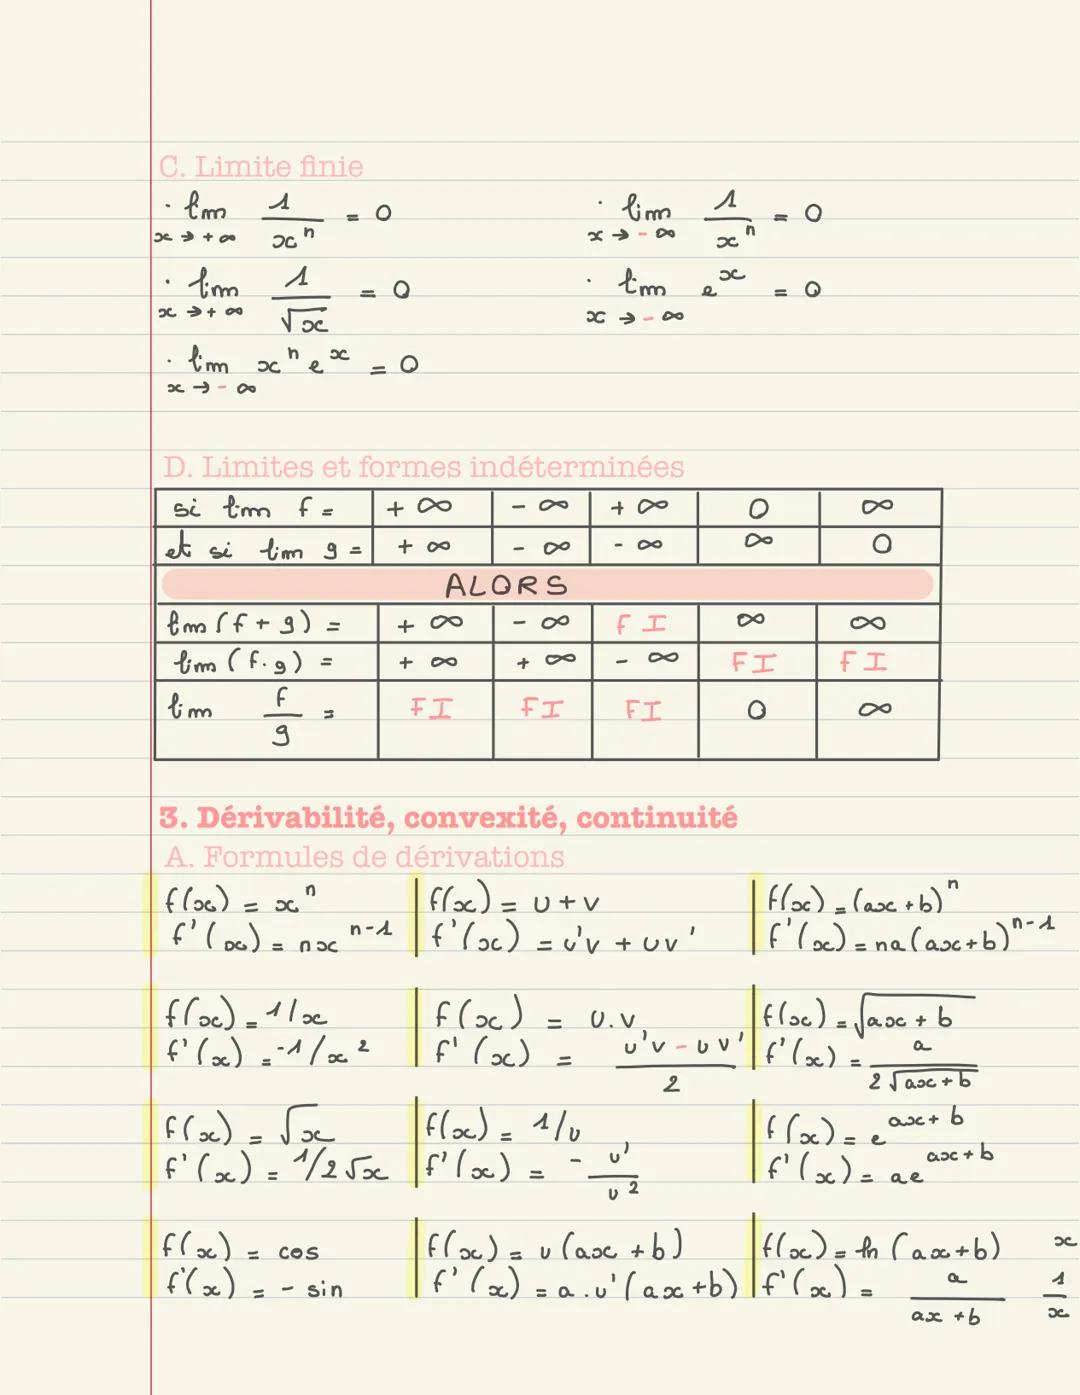 MATHEMATIQUES Révision cours terminale
Mathématiques
SOMMAIRE:
● Limites de suites
● Limites de fonctions
●
Décidabilité, convexité, continu